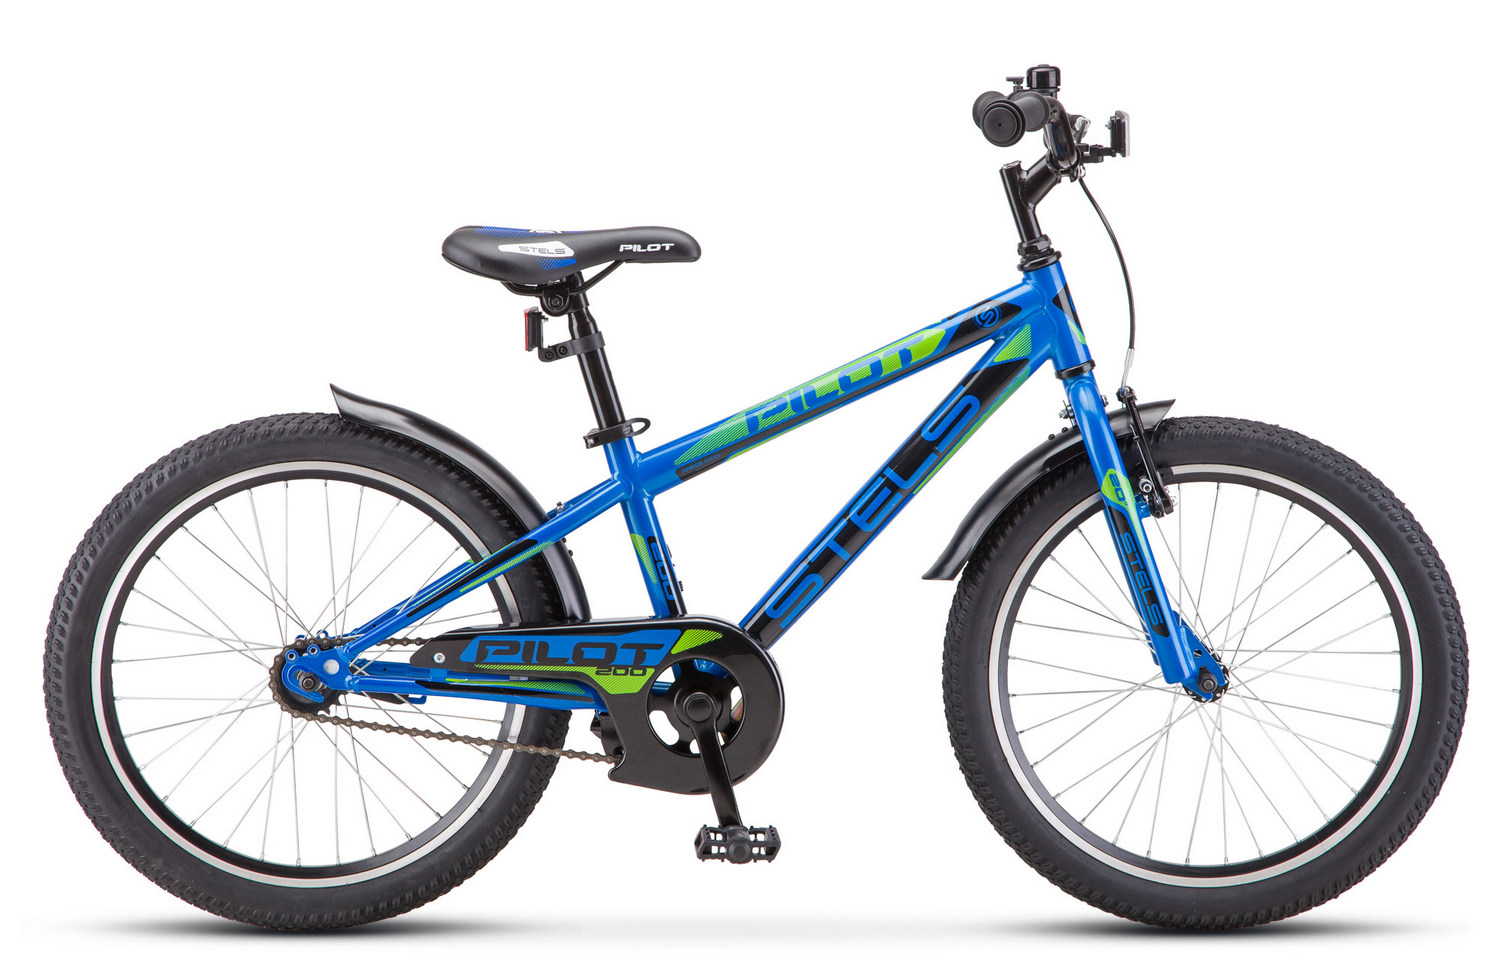 Велосипед Stels Pilot 200 Gent Z010 2019 One Size blue